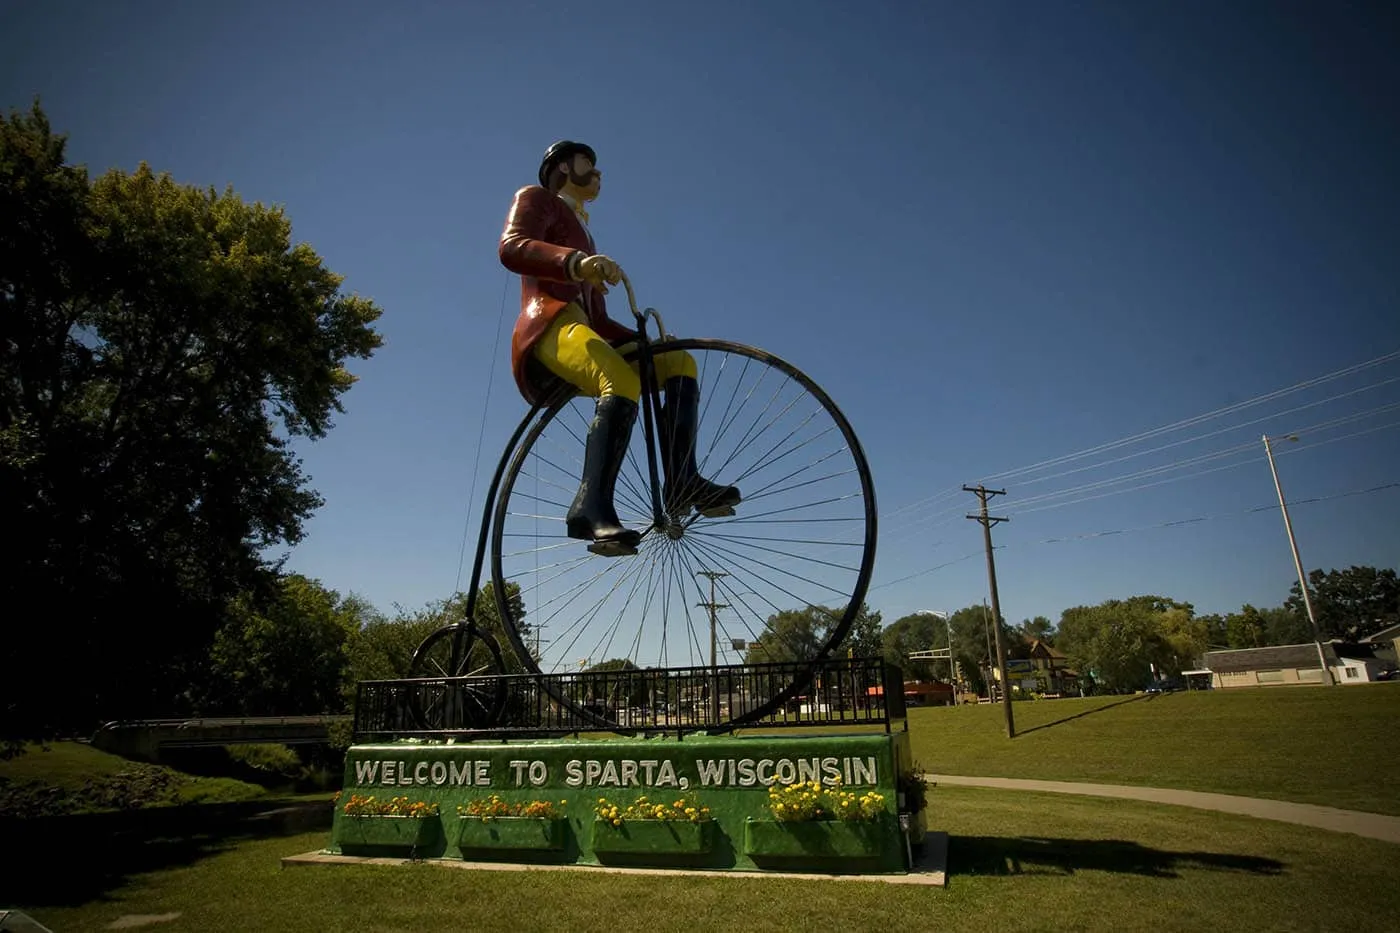 Big Ben, Ben Bikin - World's Largest Bicyclist in Sparta, Wisconsin